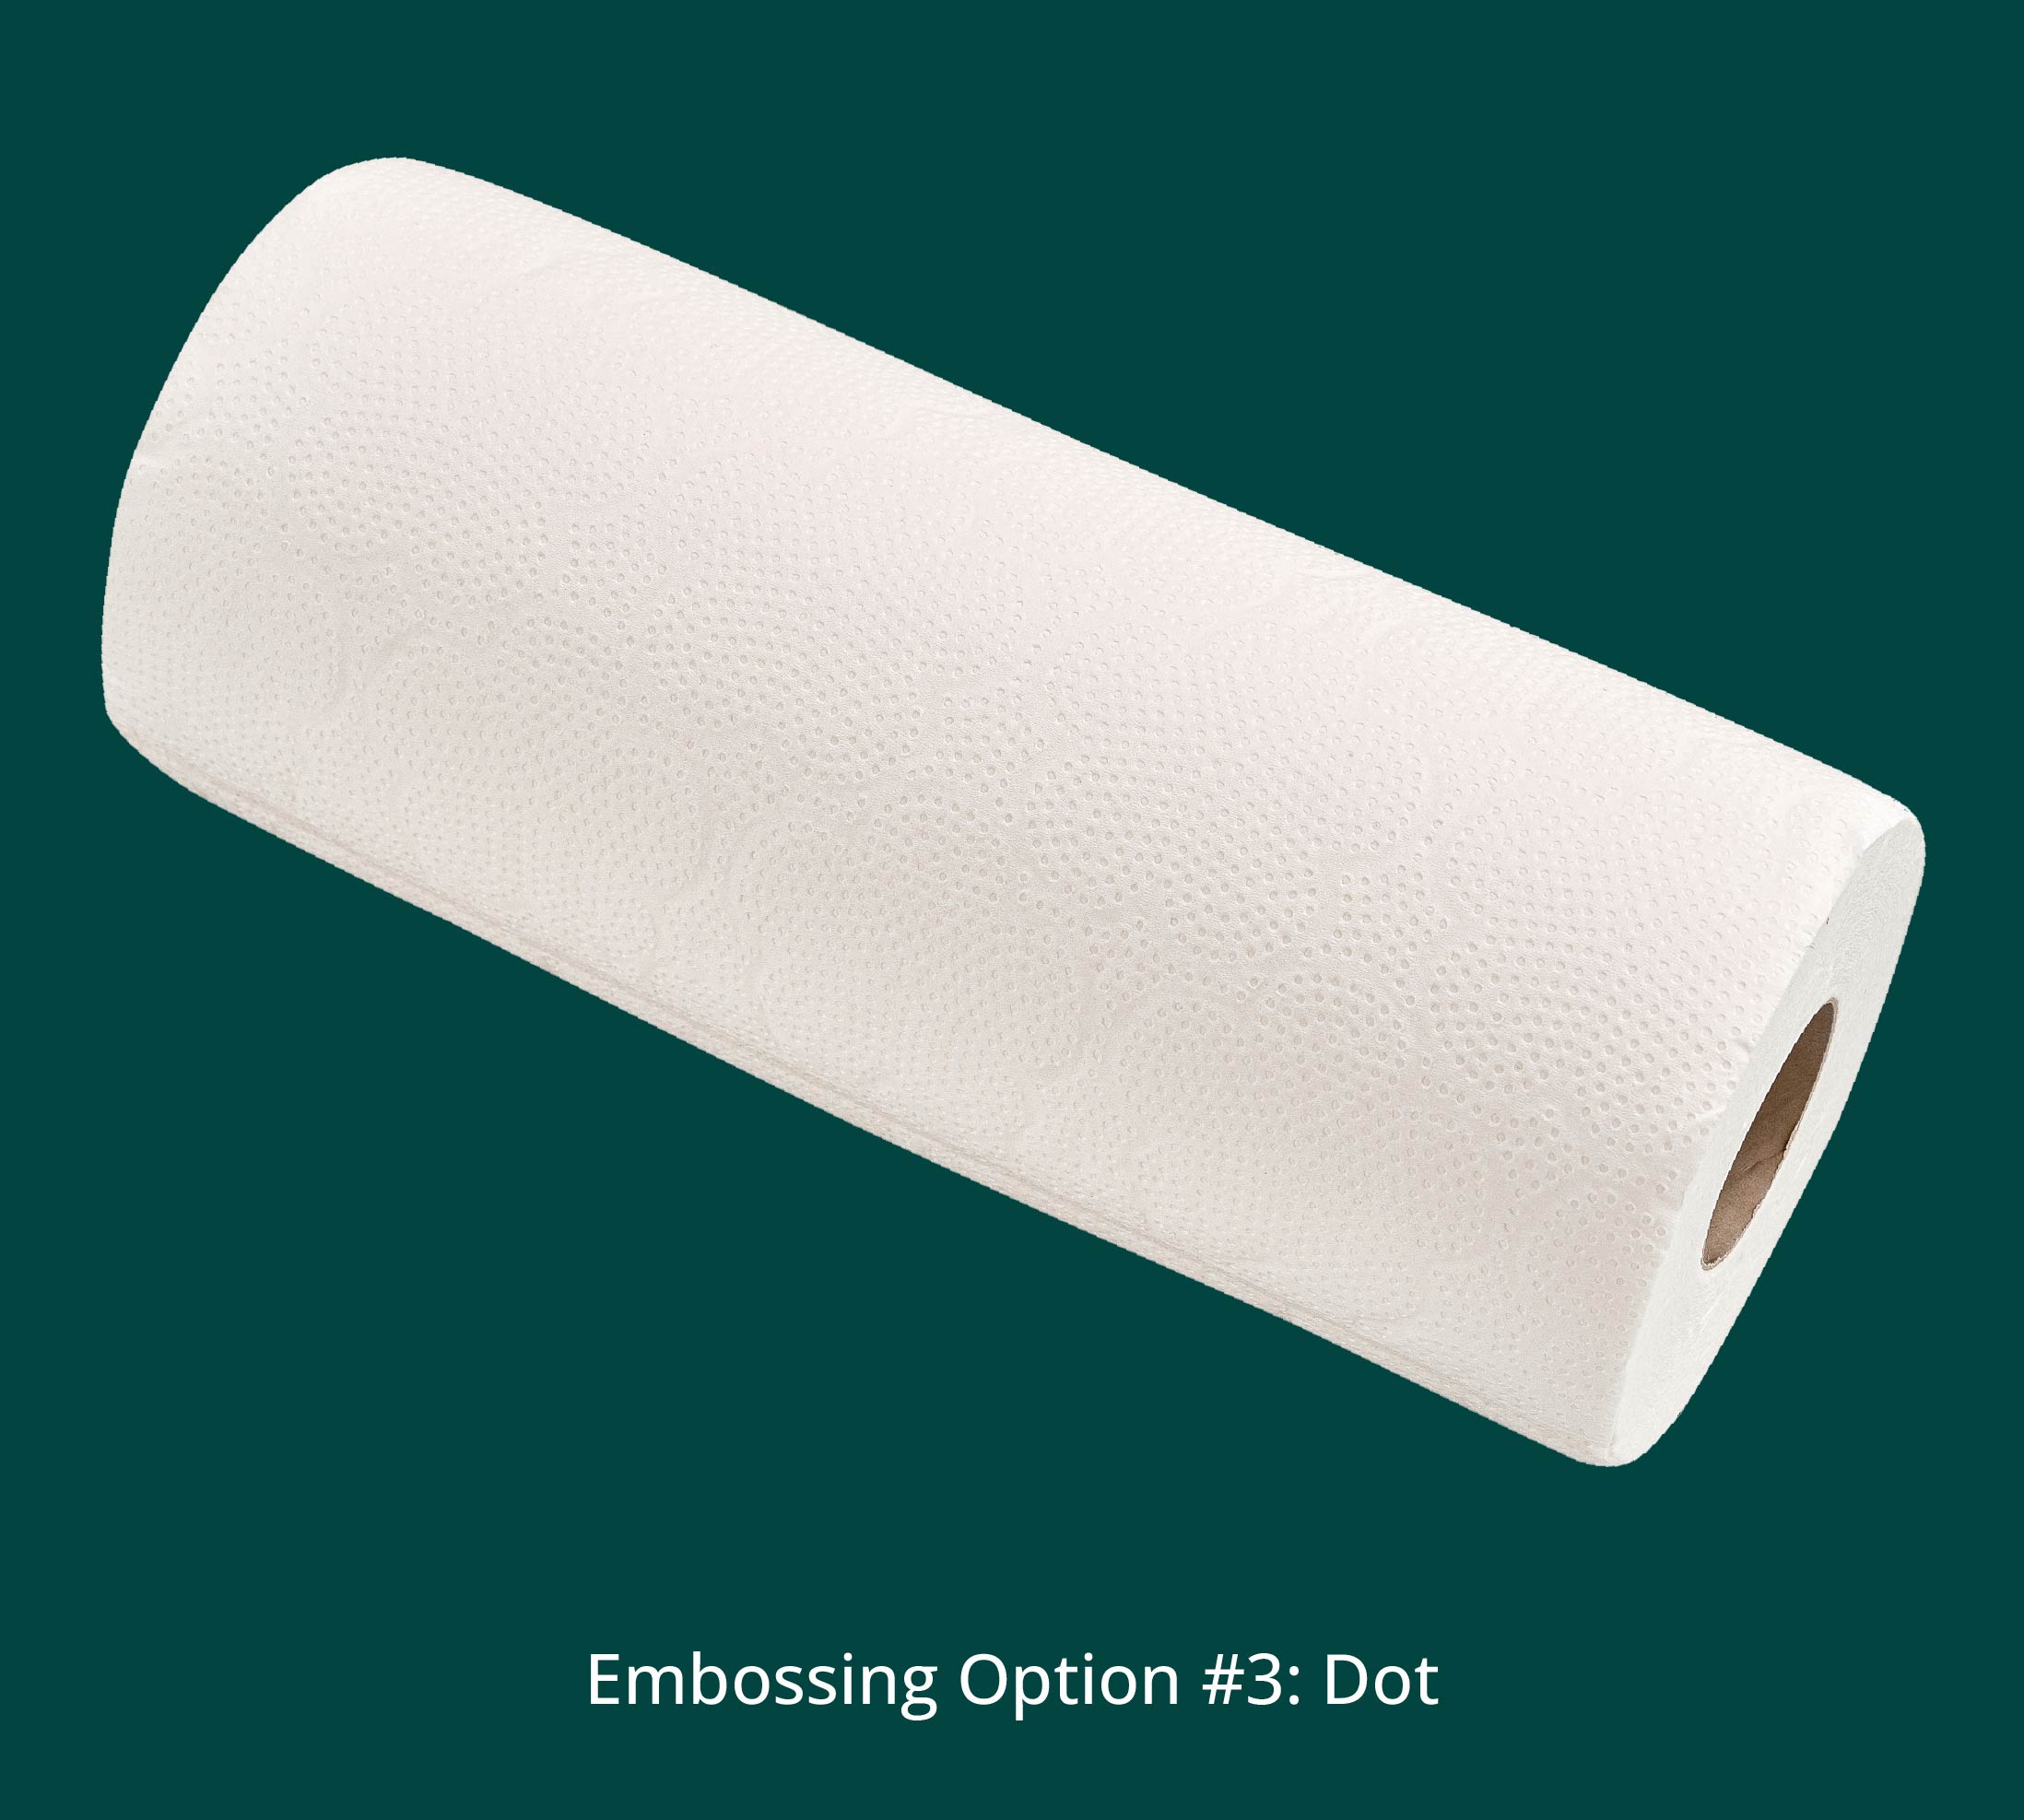 Embossing Option #3: Dot